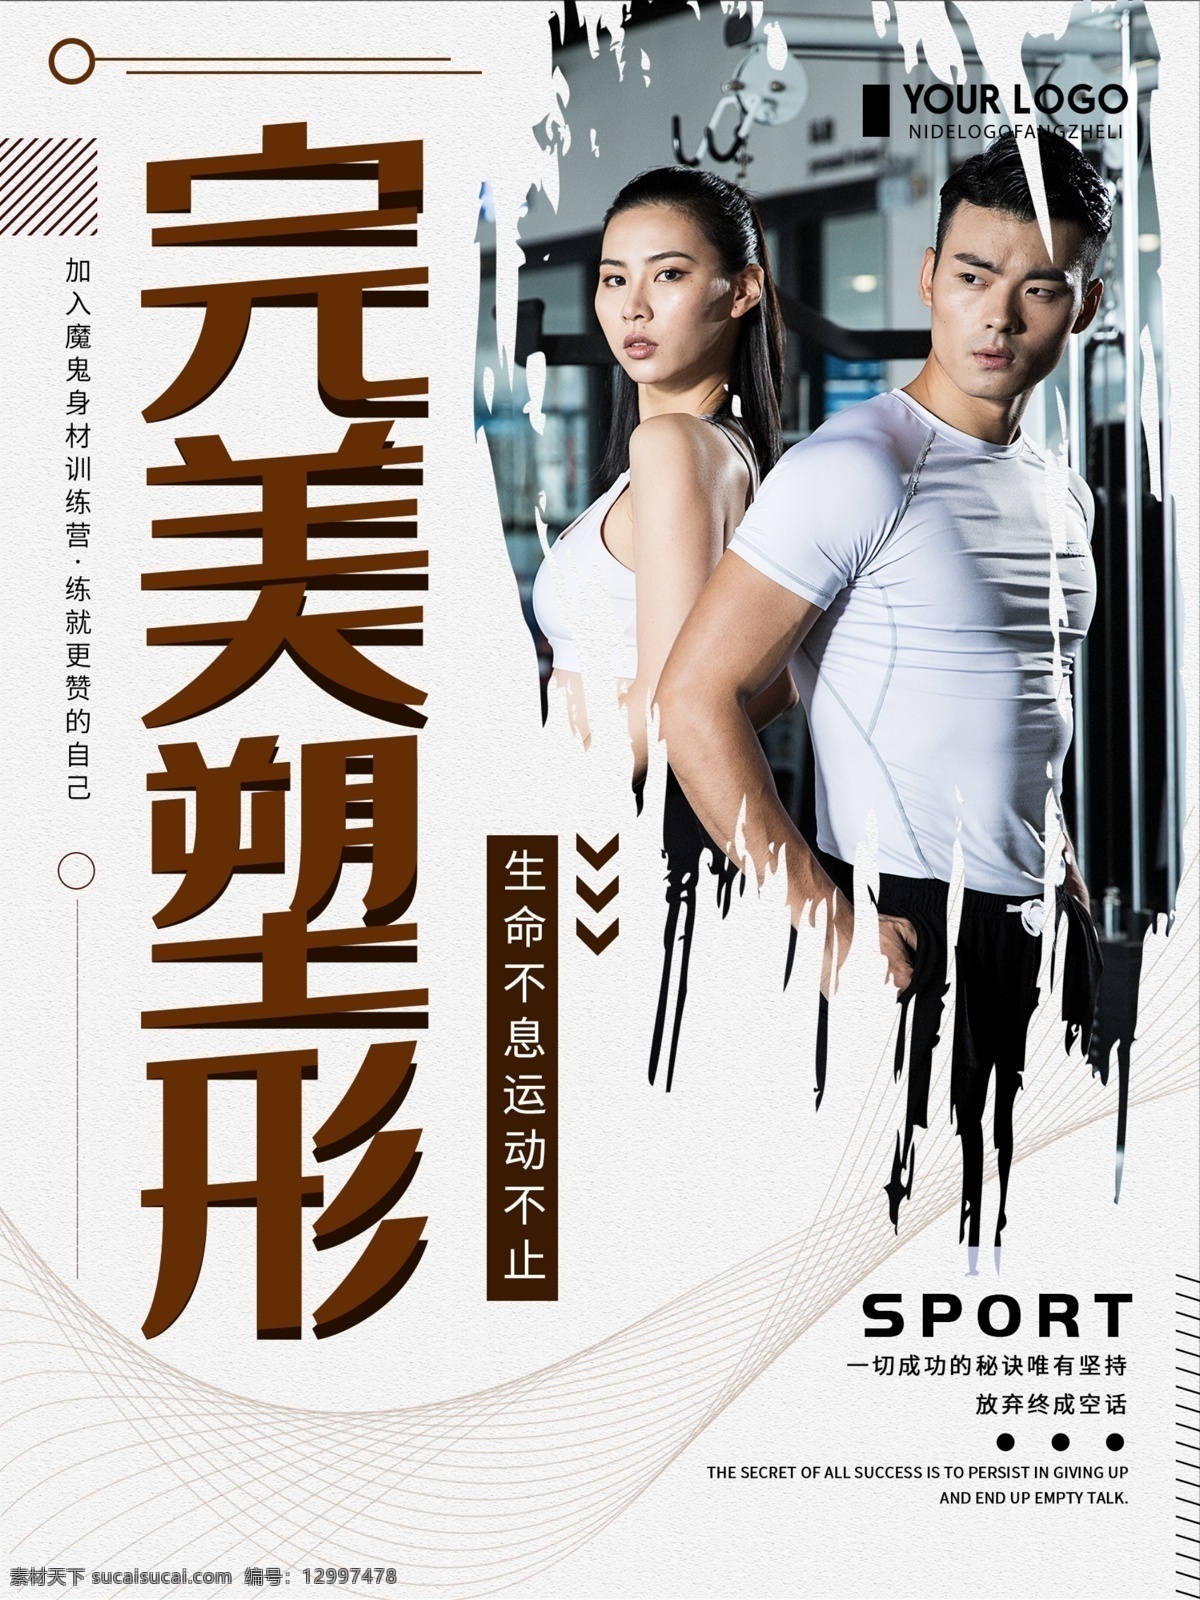 创意 简约 完美 塑形 健身 运动 宣传海报 完美塑形 健身运动 运动健身海报 健身房 健身宣传海报